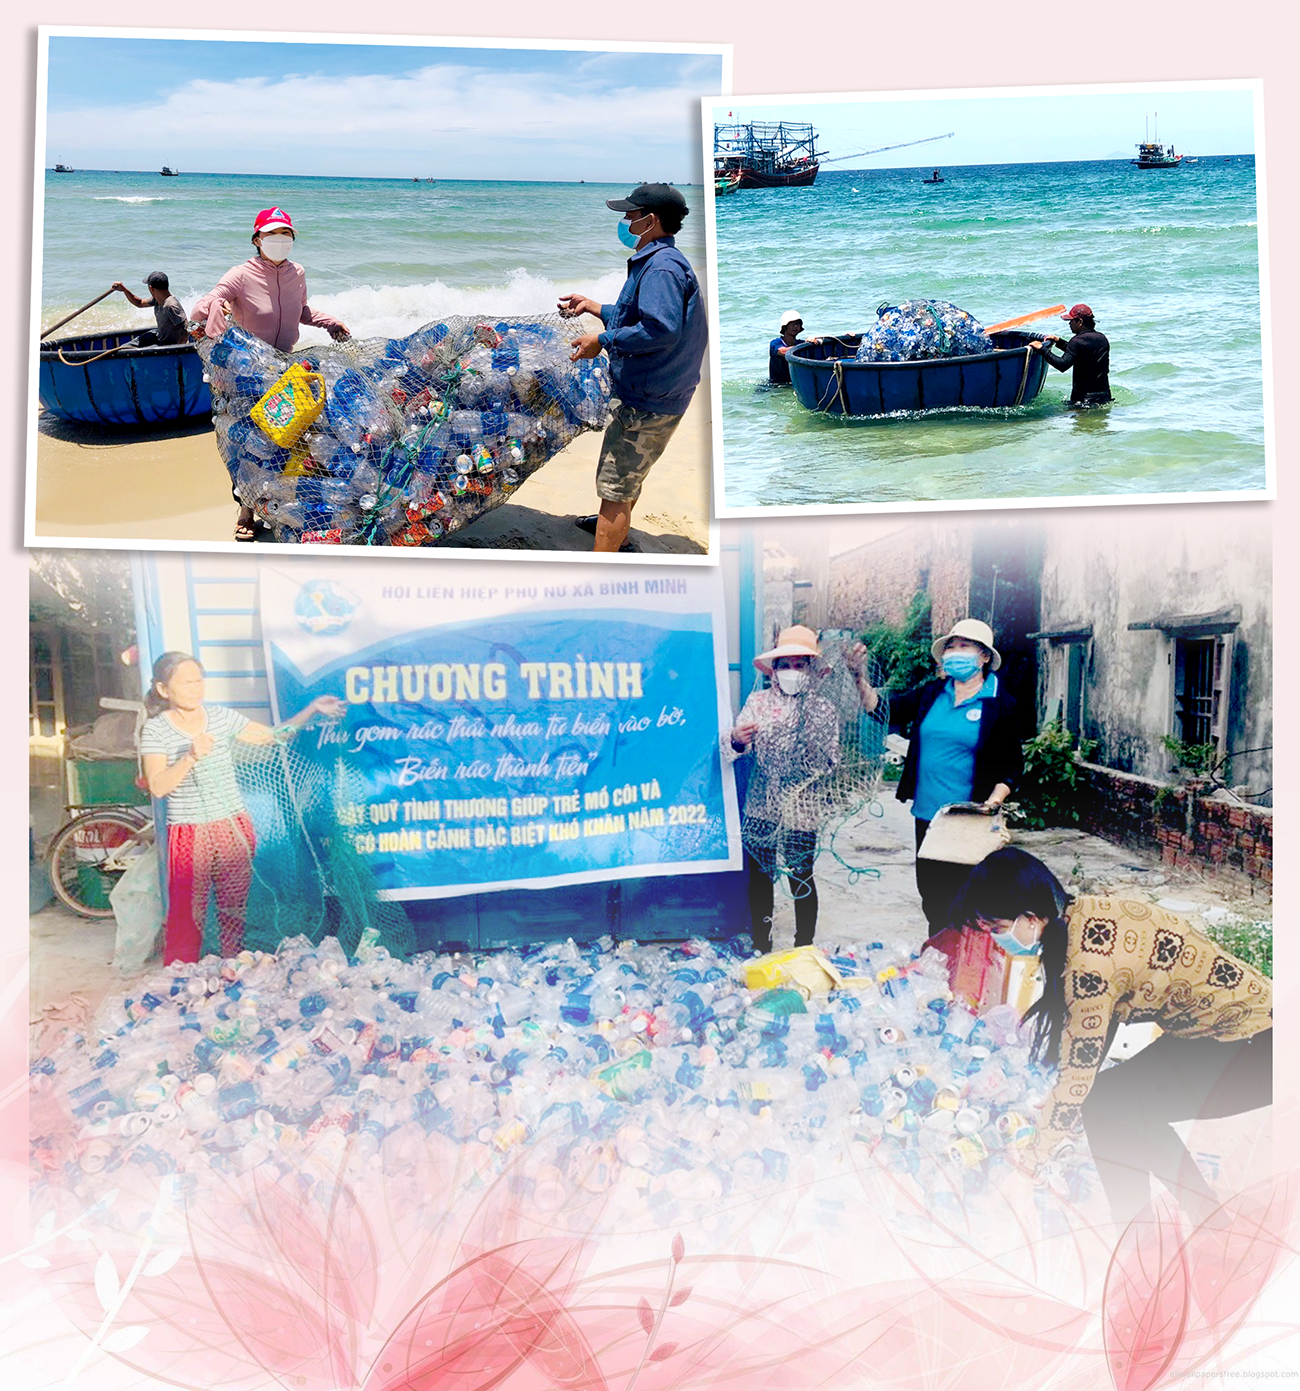 Mô hình “Thu gom rác thải nhựa từ biển vào bờ, biến rác thành tiền”.